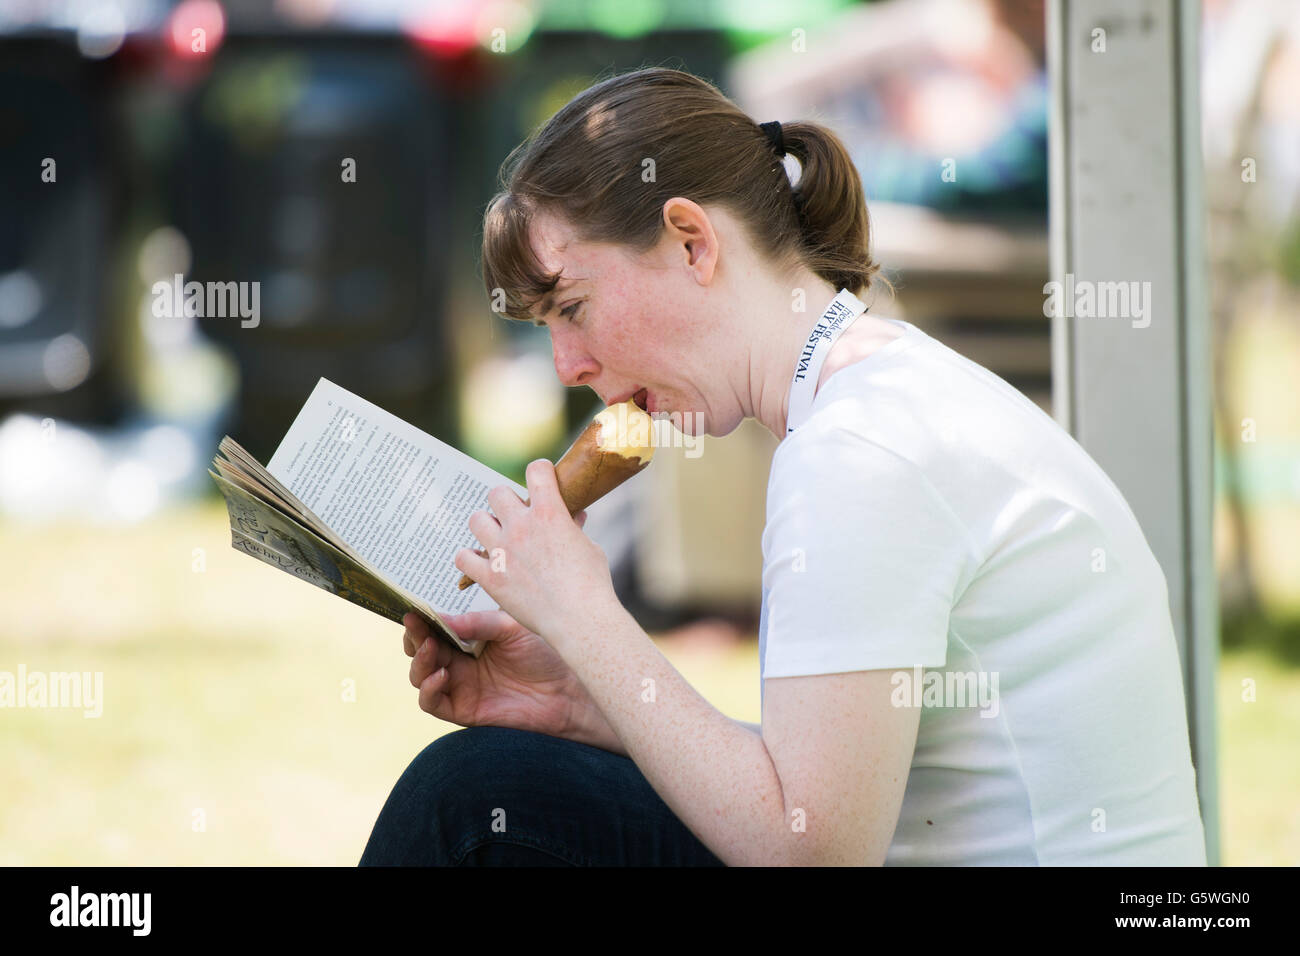 Bénéficiant d'une jeune femme qui mange une glace et la lecture d'un livre dans le chaud soleil d'été au Hay Festival de la littérature et les arts, Hay-on-Wye, Powys, Pays de Galles, Royaume-Uni, Dimanche 05 Juin 2016 Banque D'Images